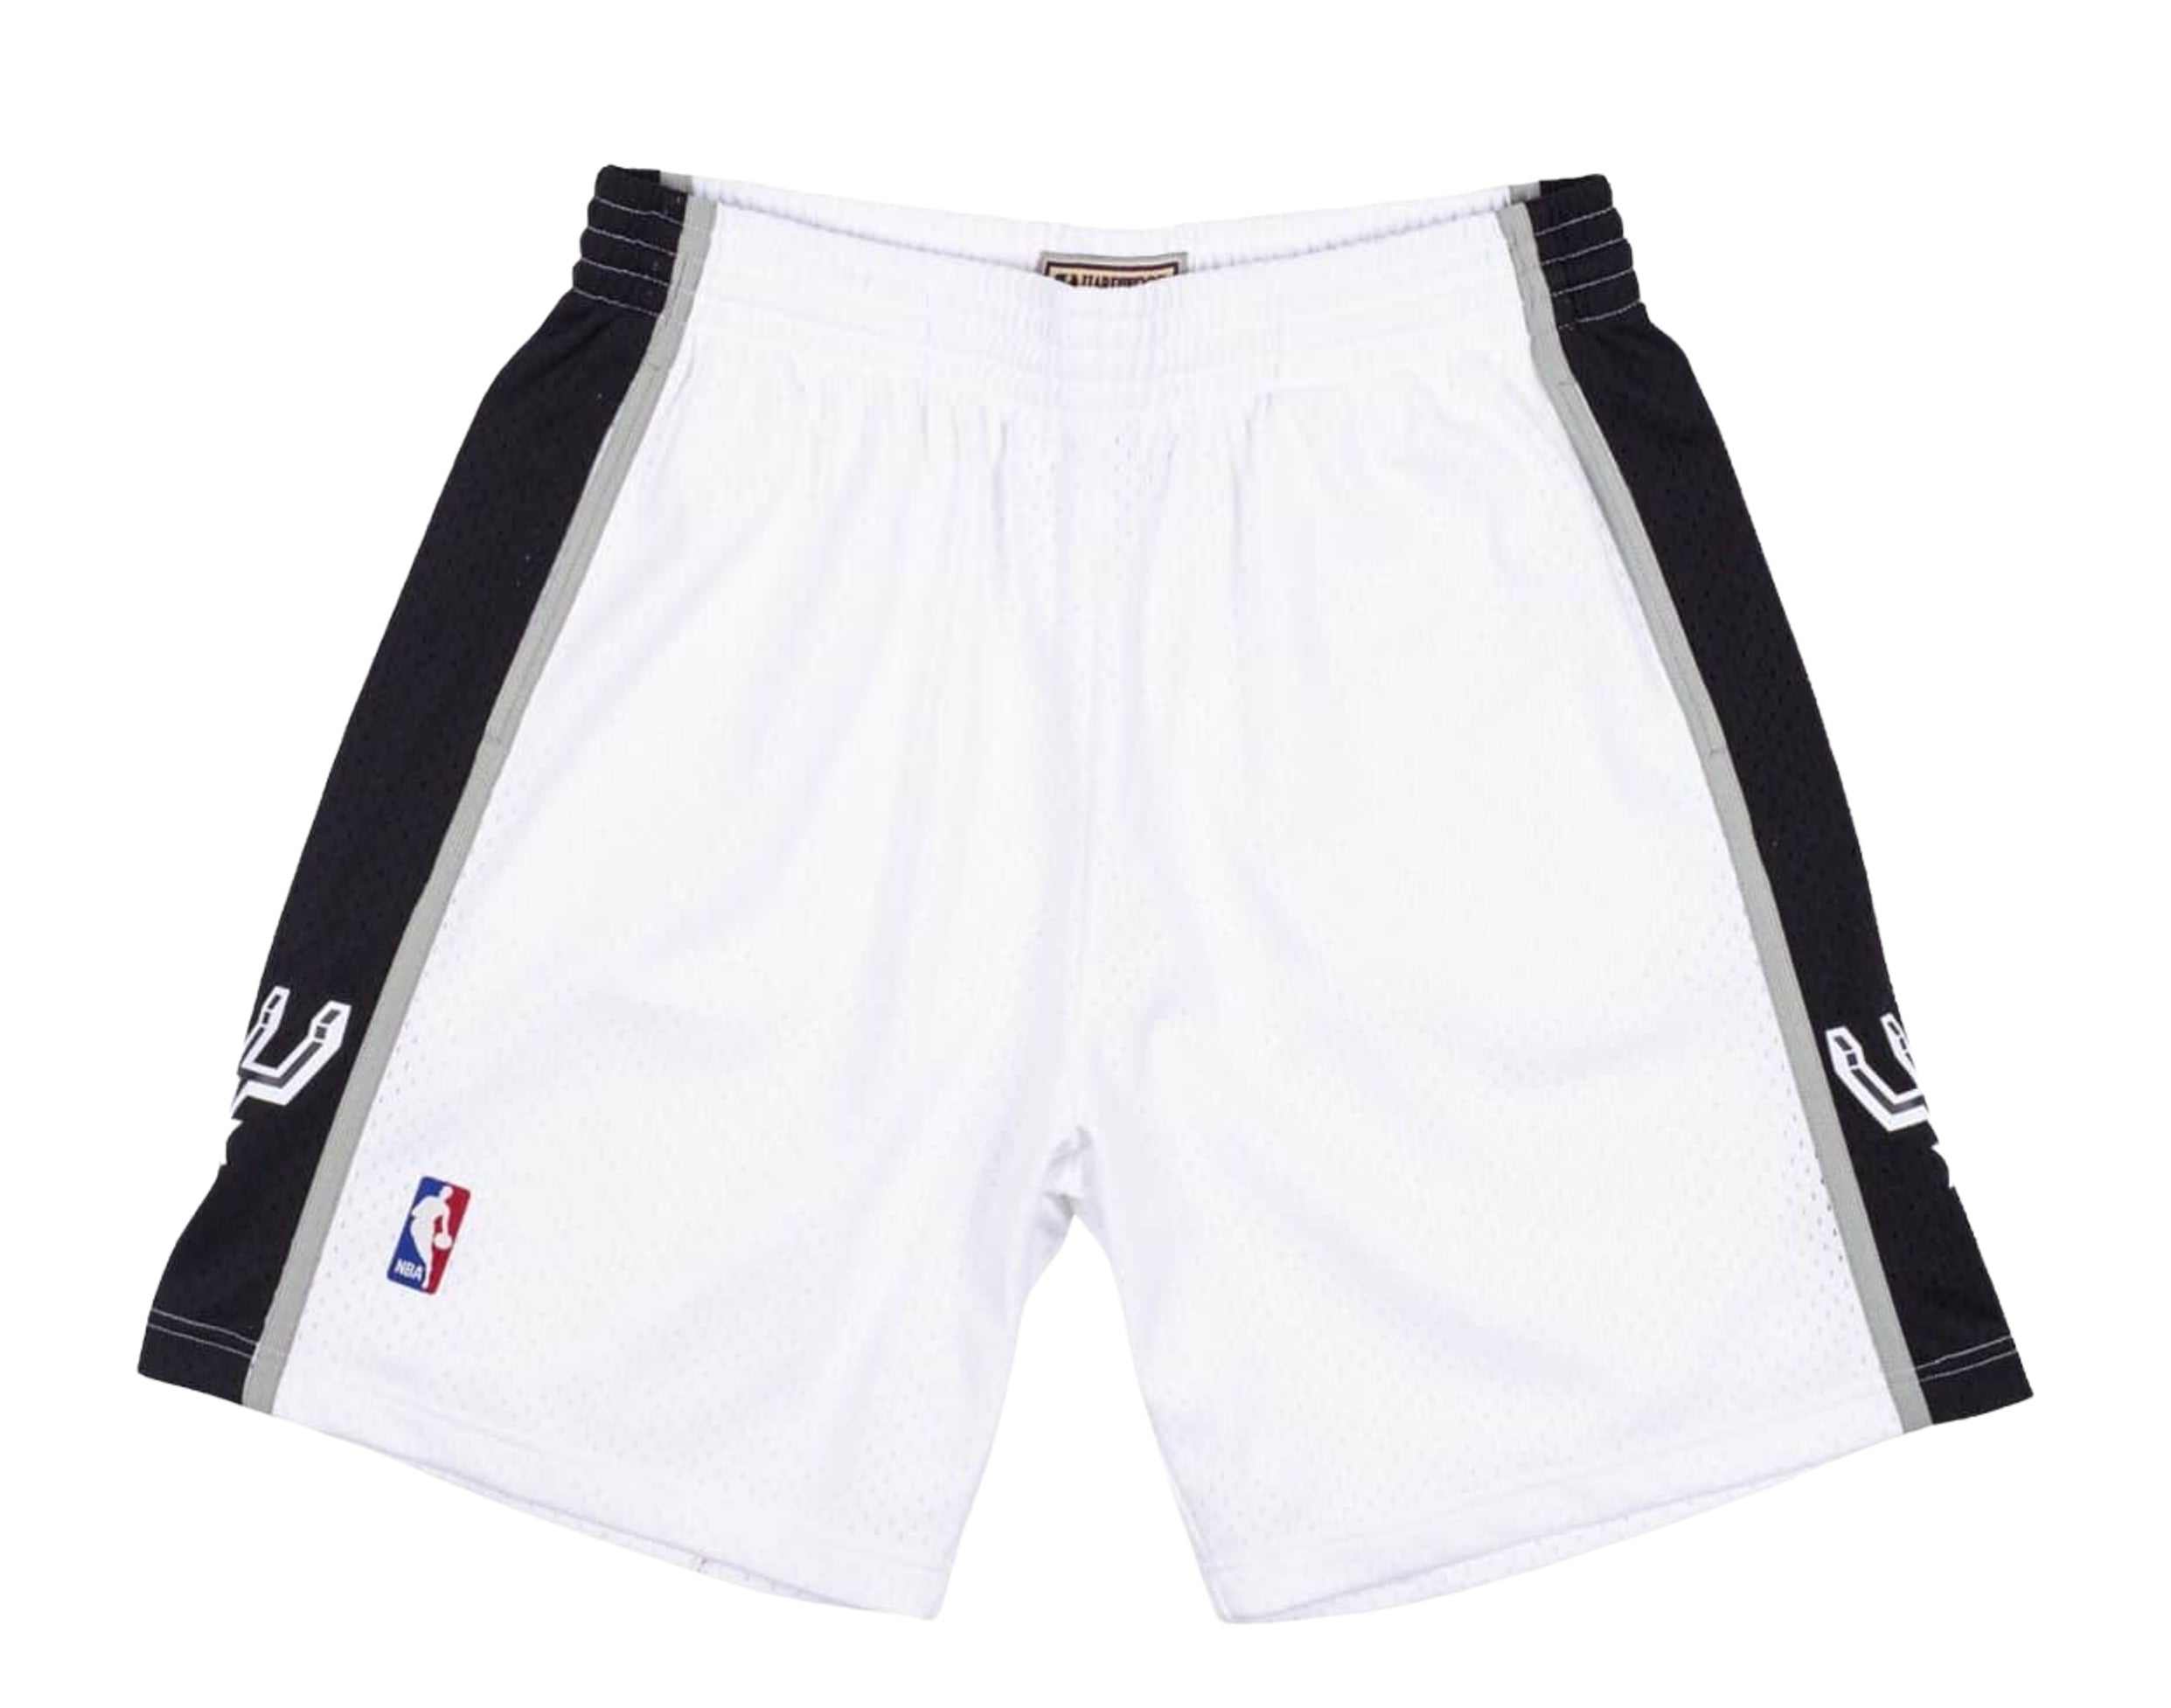 Adidas NBA Shorts Mens Small Orange Cavs Basketball